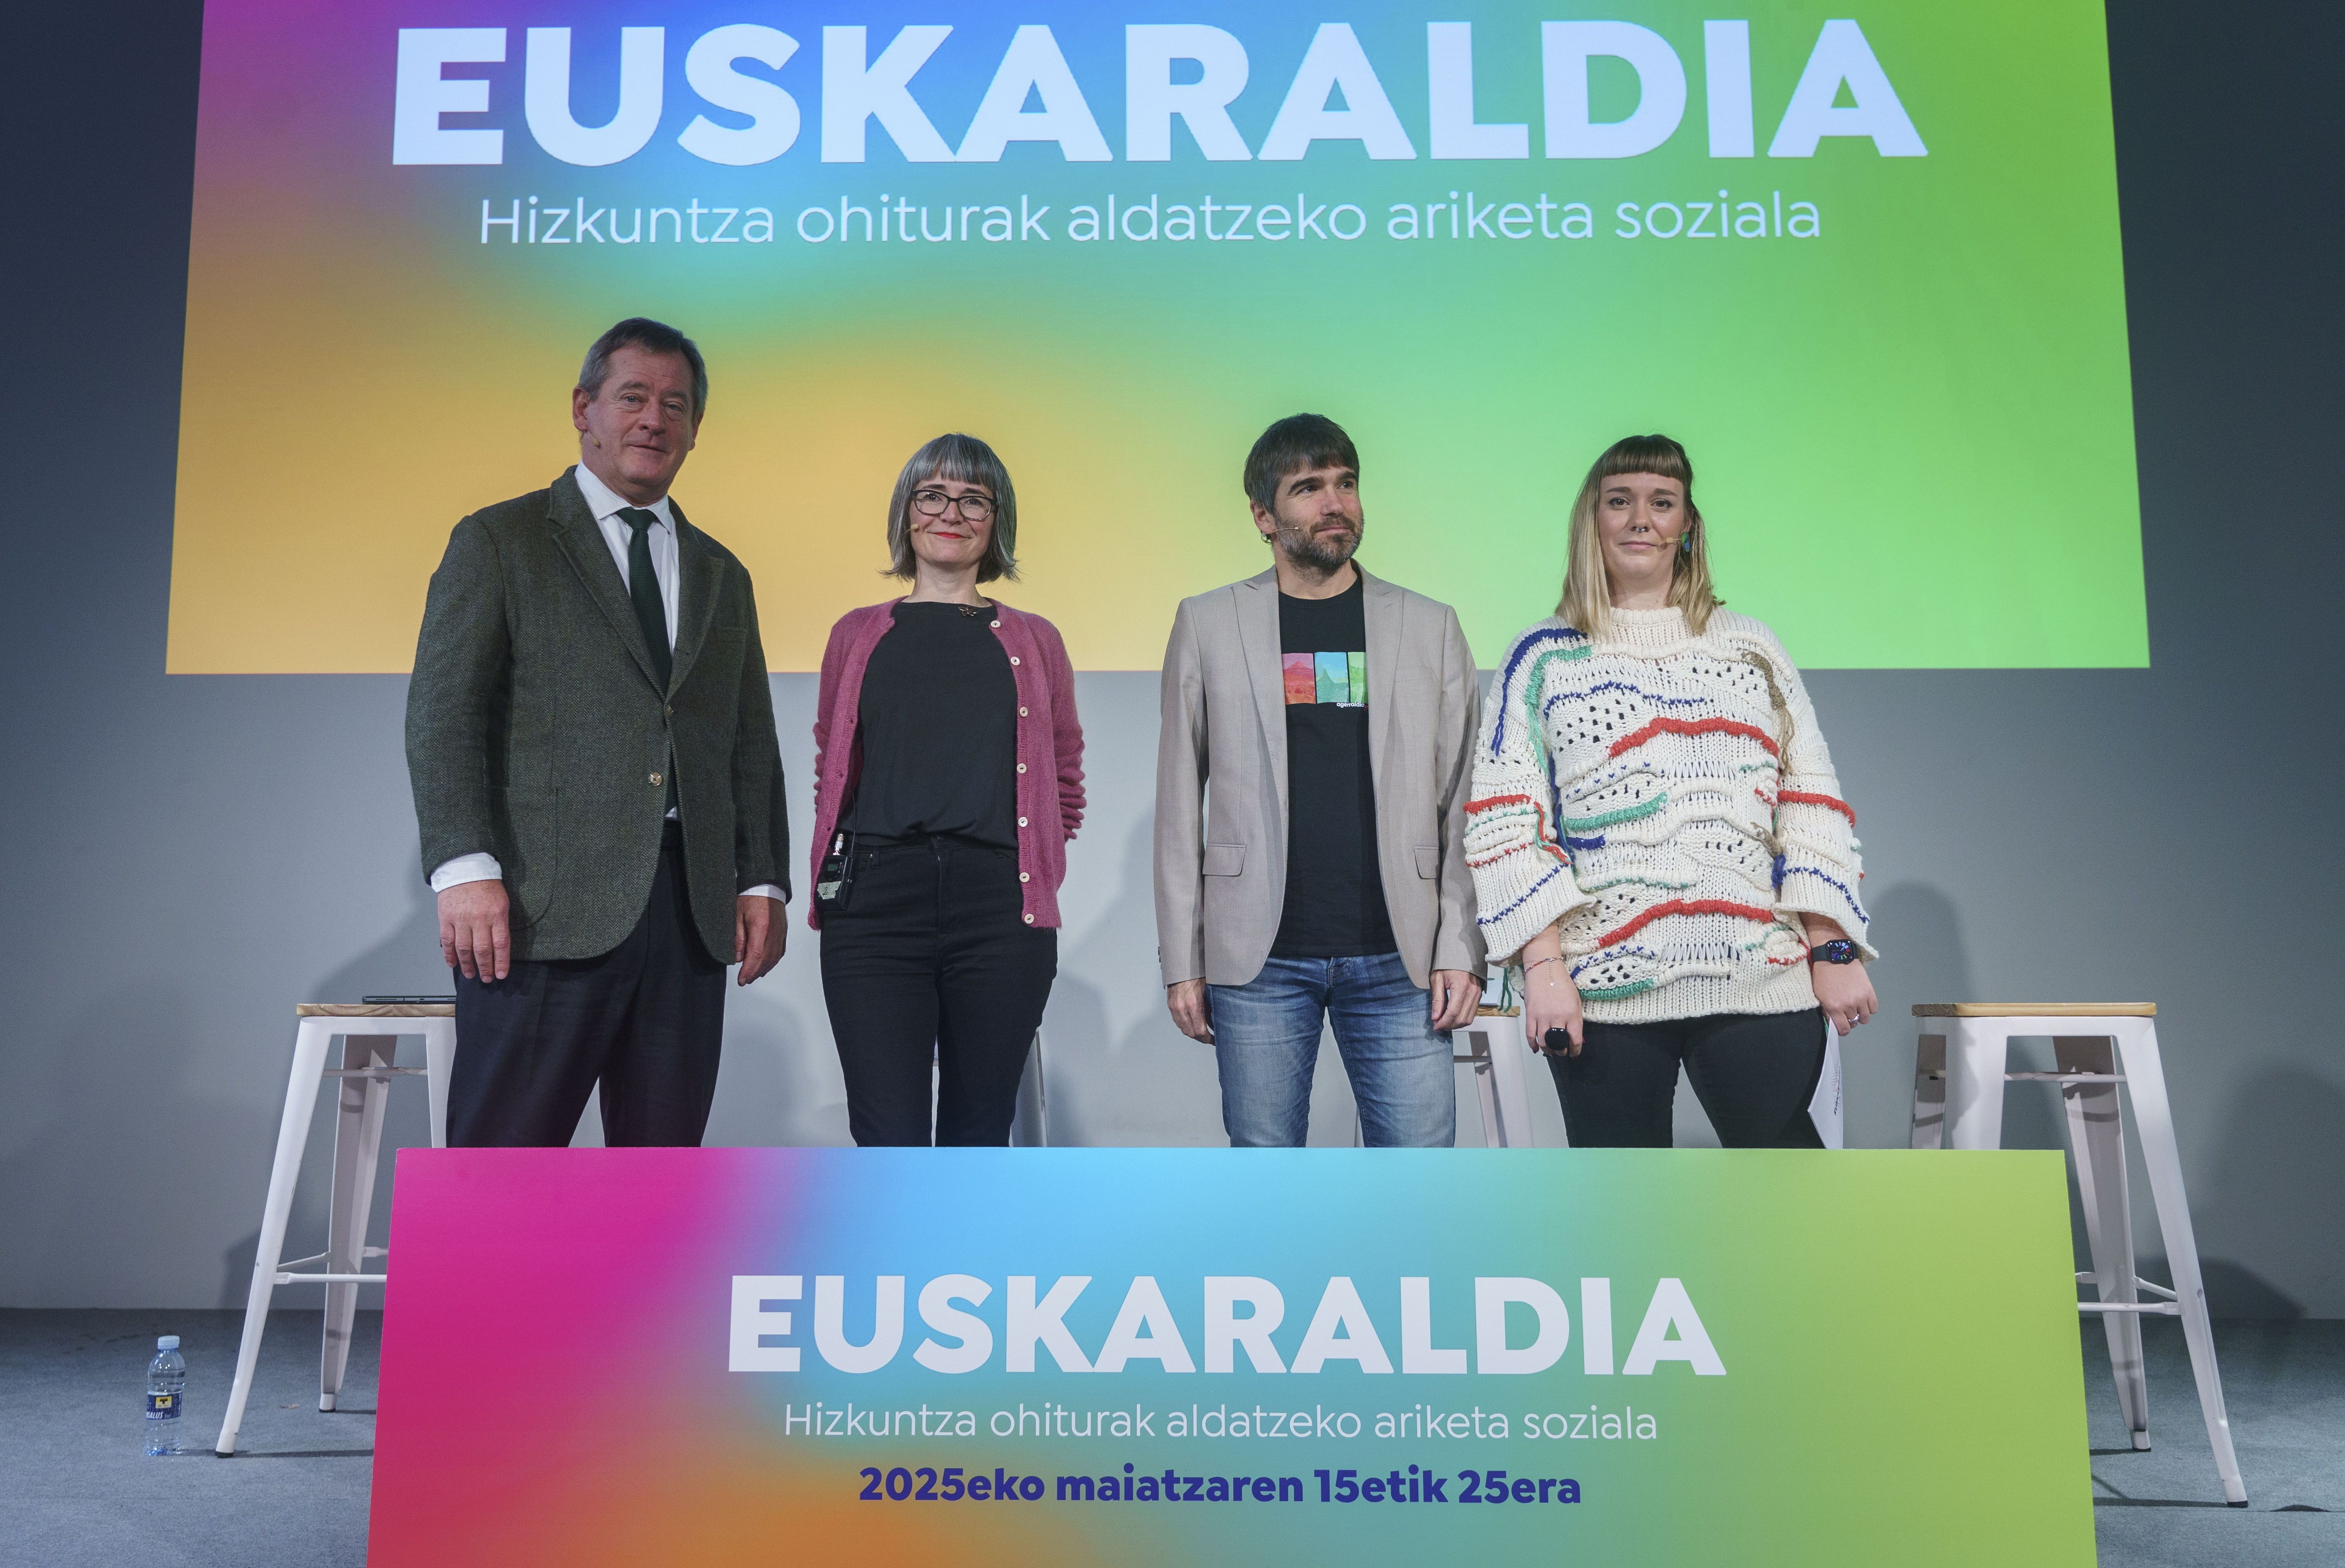 Euskaraldia 2025eko udaberrian egingo dela jakinarazteko ekitaldia.